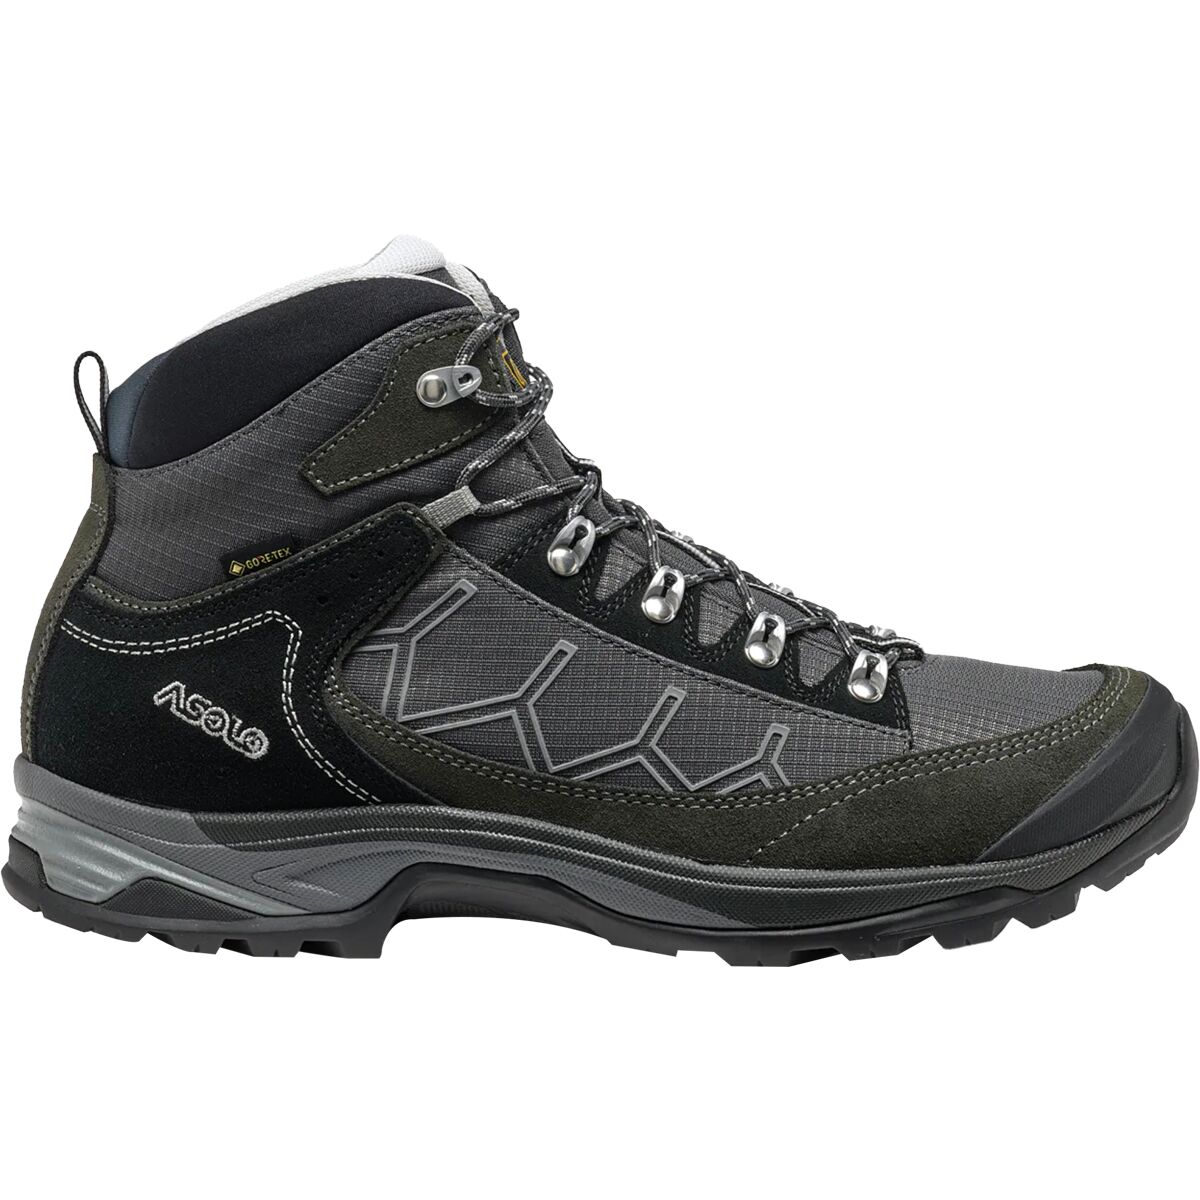 Asolo Falcon GV Hiking Boot - Men's